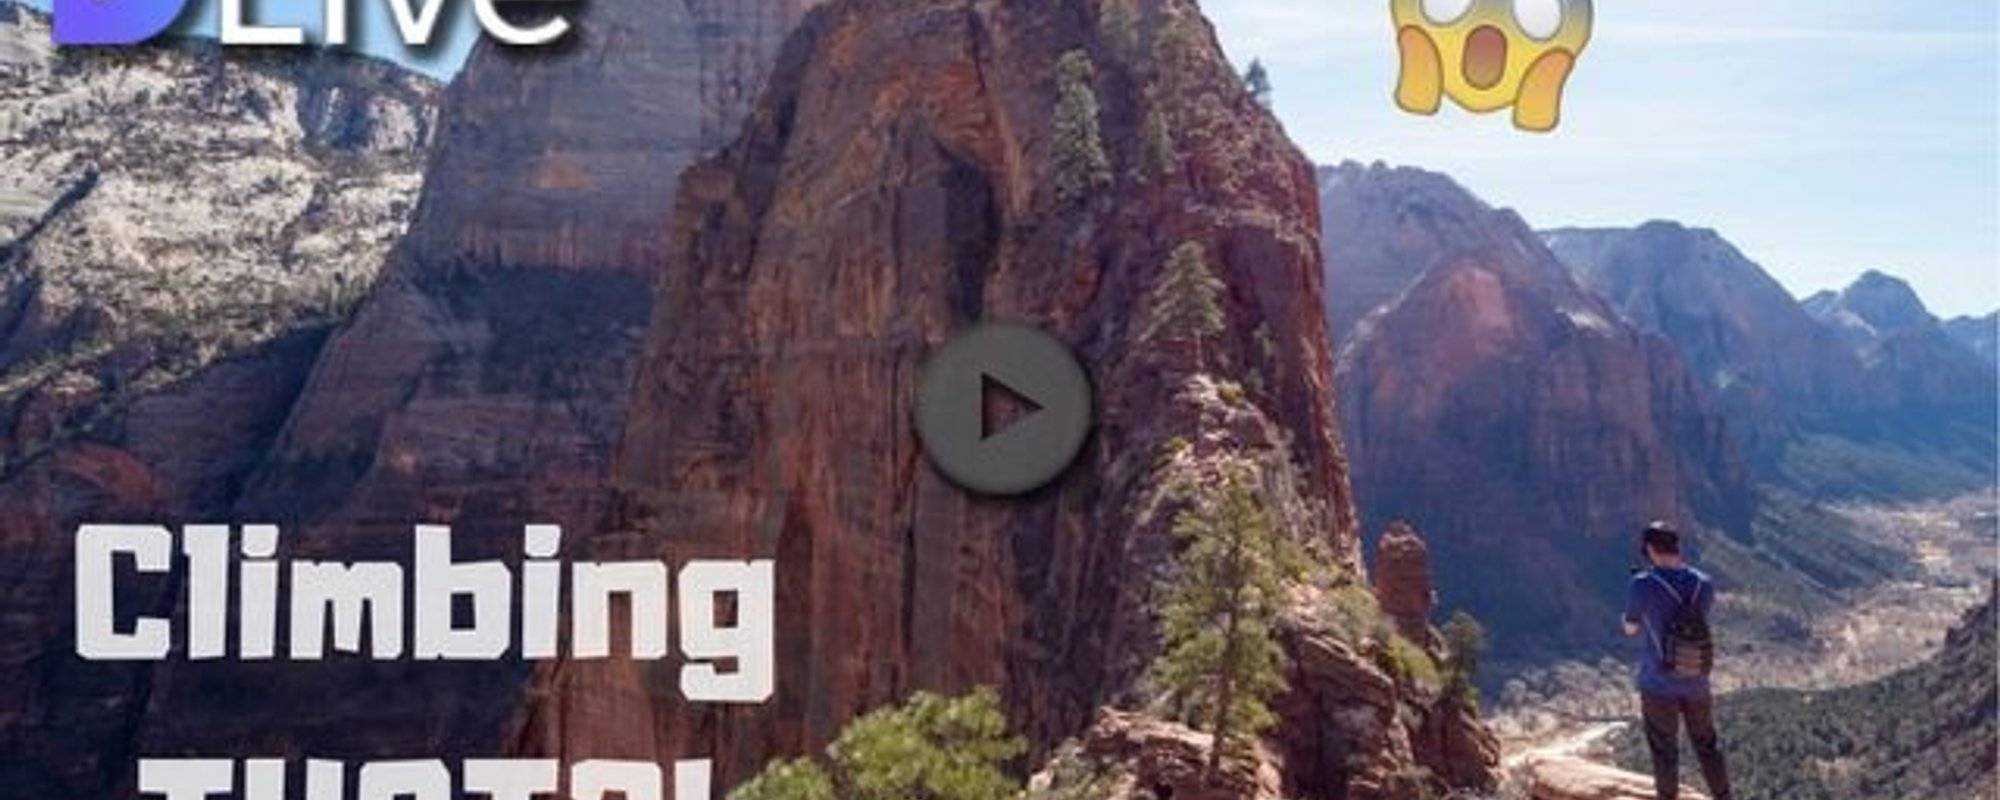 DLive Southern Utah Series #9 - Angel's Landing (North America's most dangerous hike?)